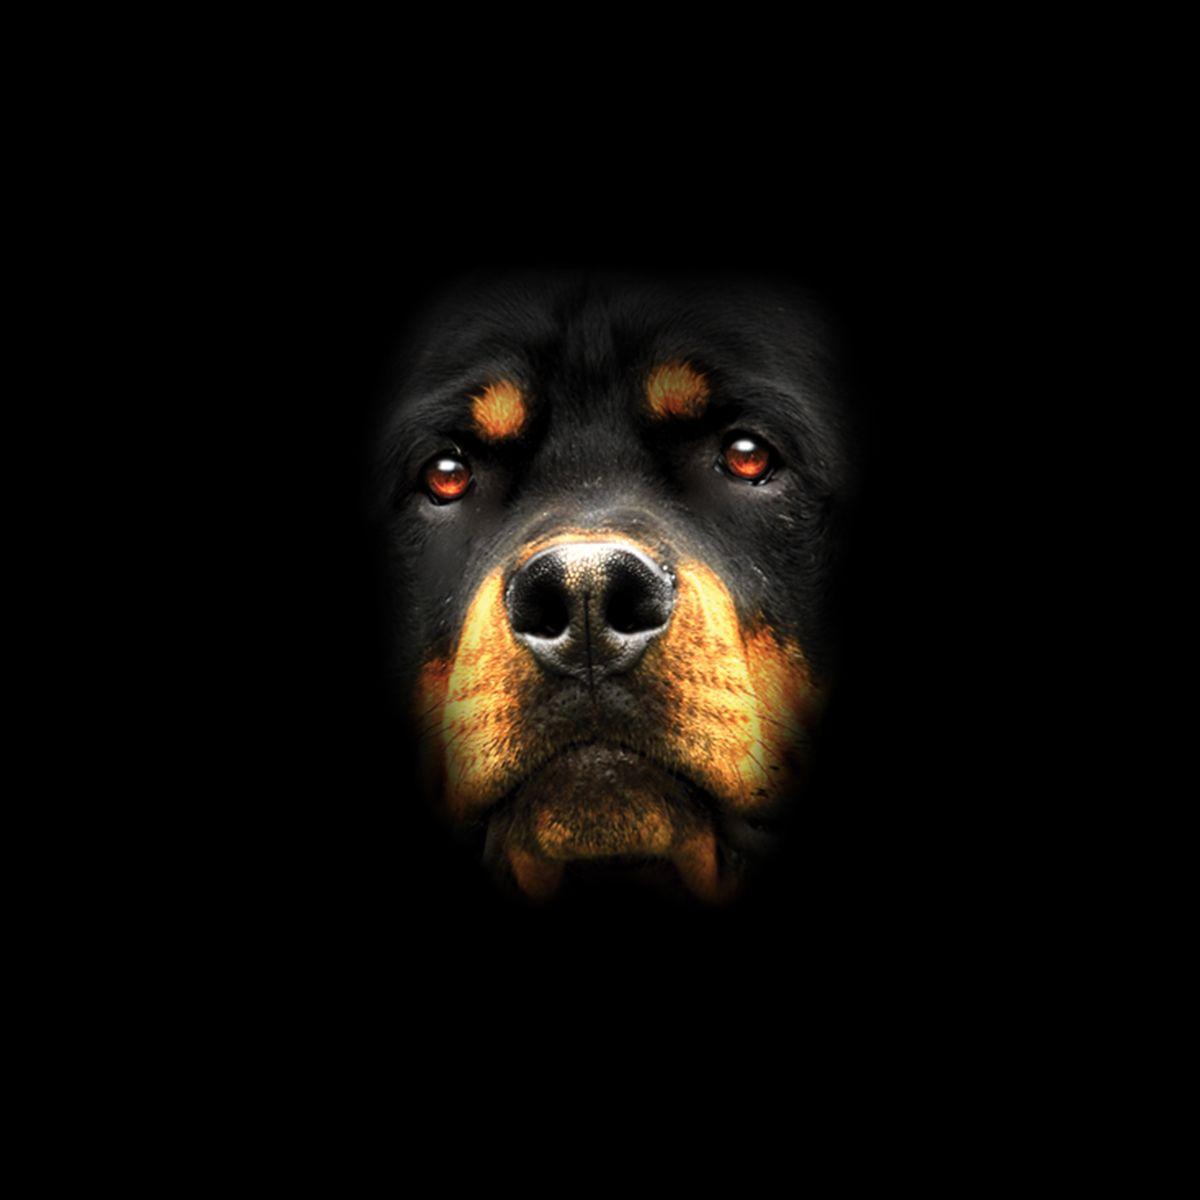 Rottweiler Logo - Details about Rottweiler Face Dog Animals Men T-shirt XS-5XL New